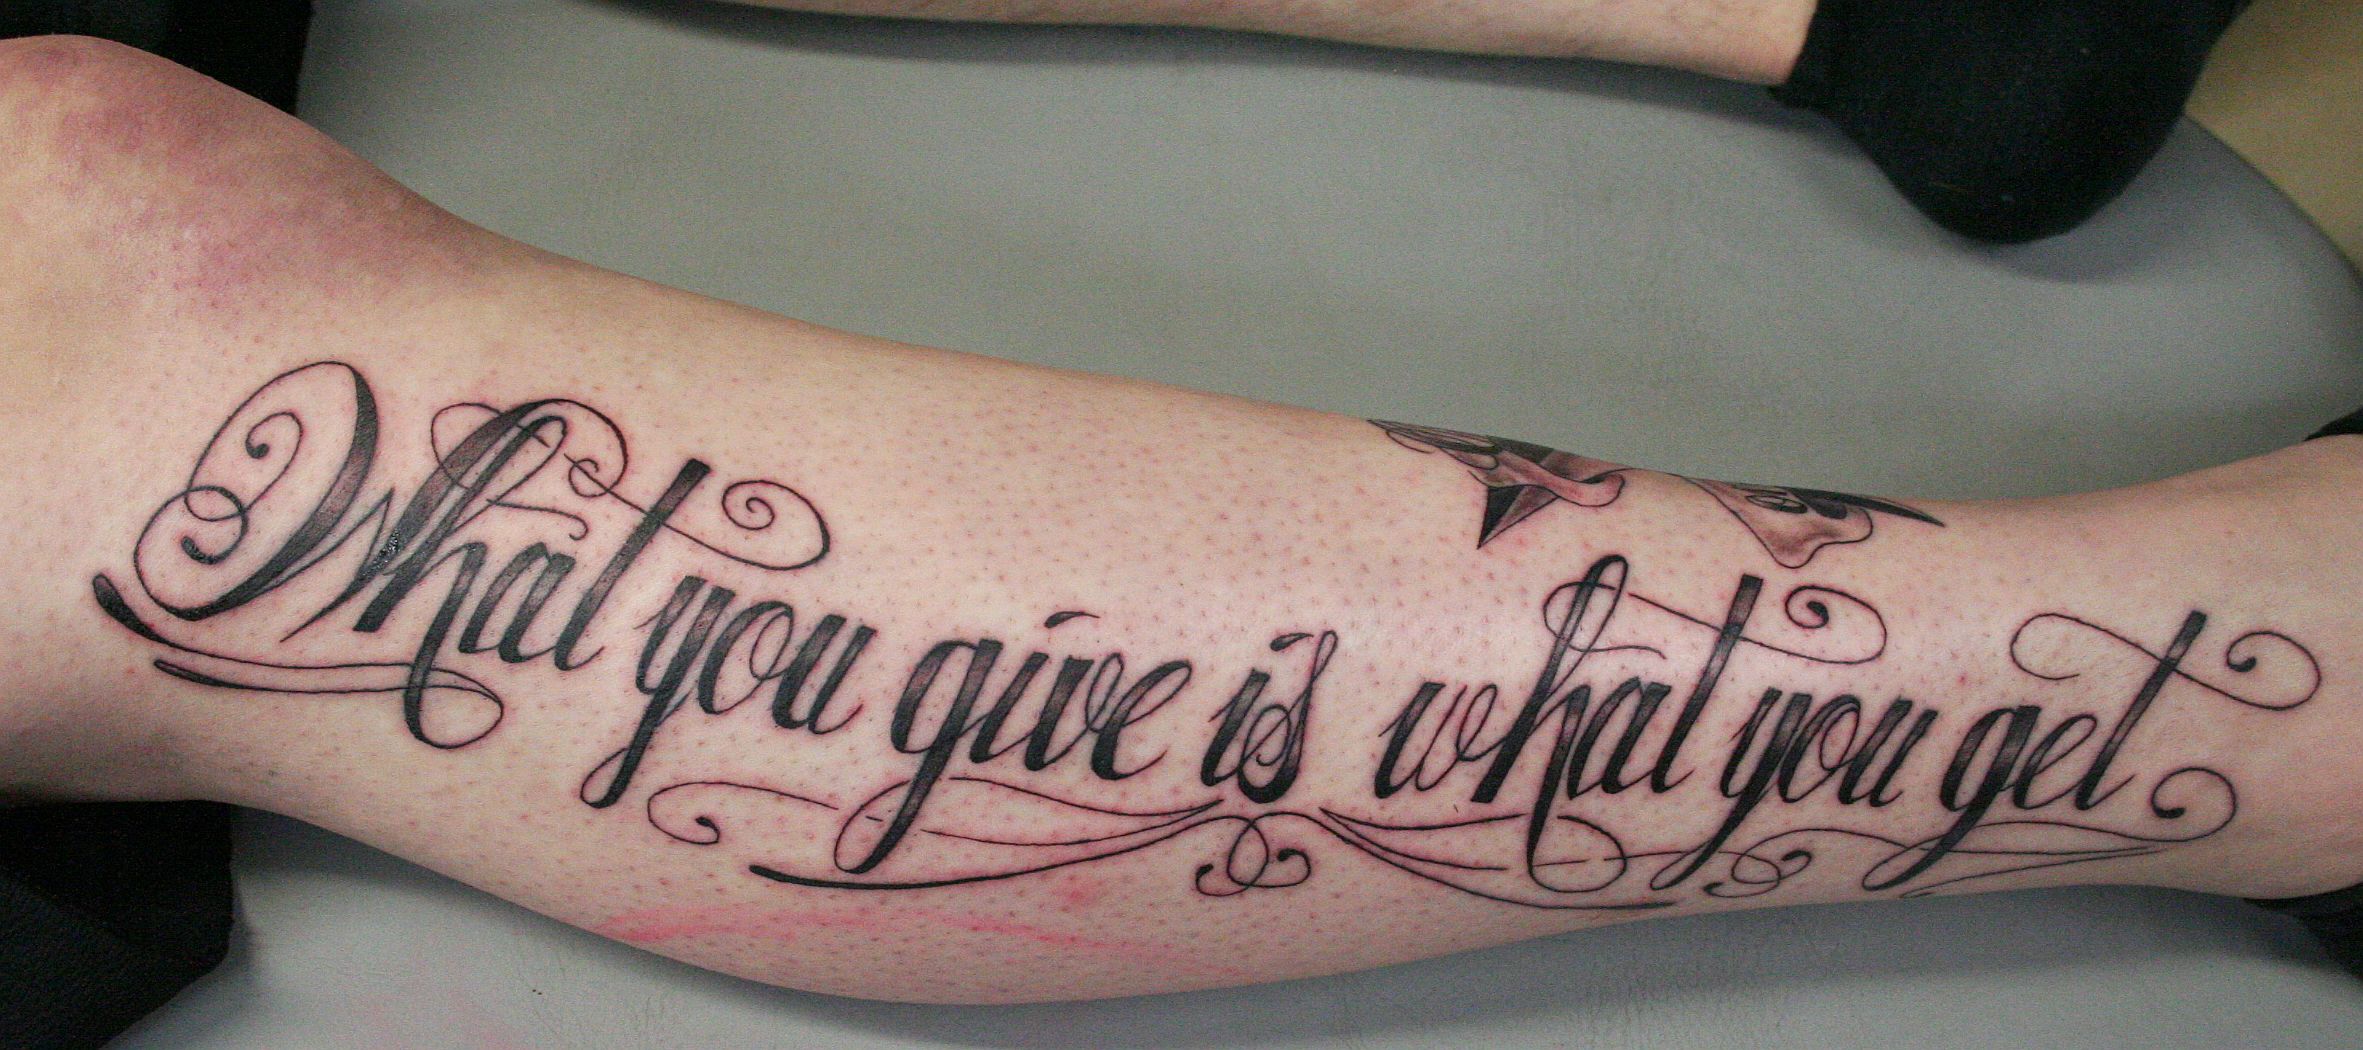 Signature Arm Lettering tattoo by Galata Tattoo  Best Tattoo Ideas Gallery